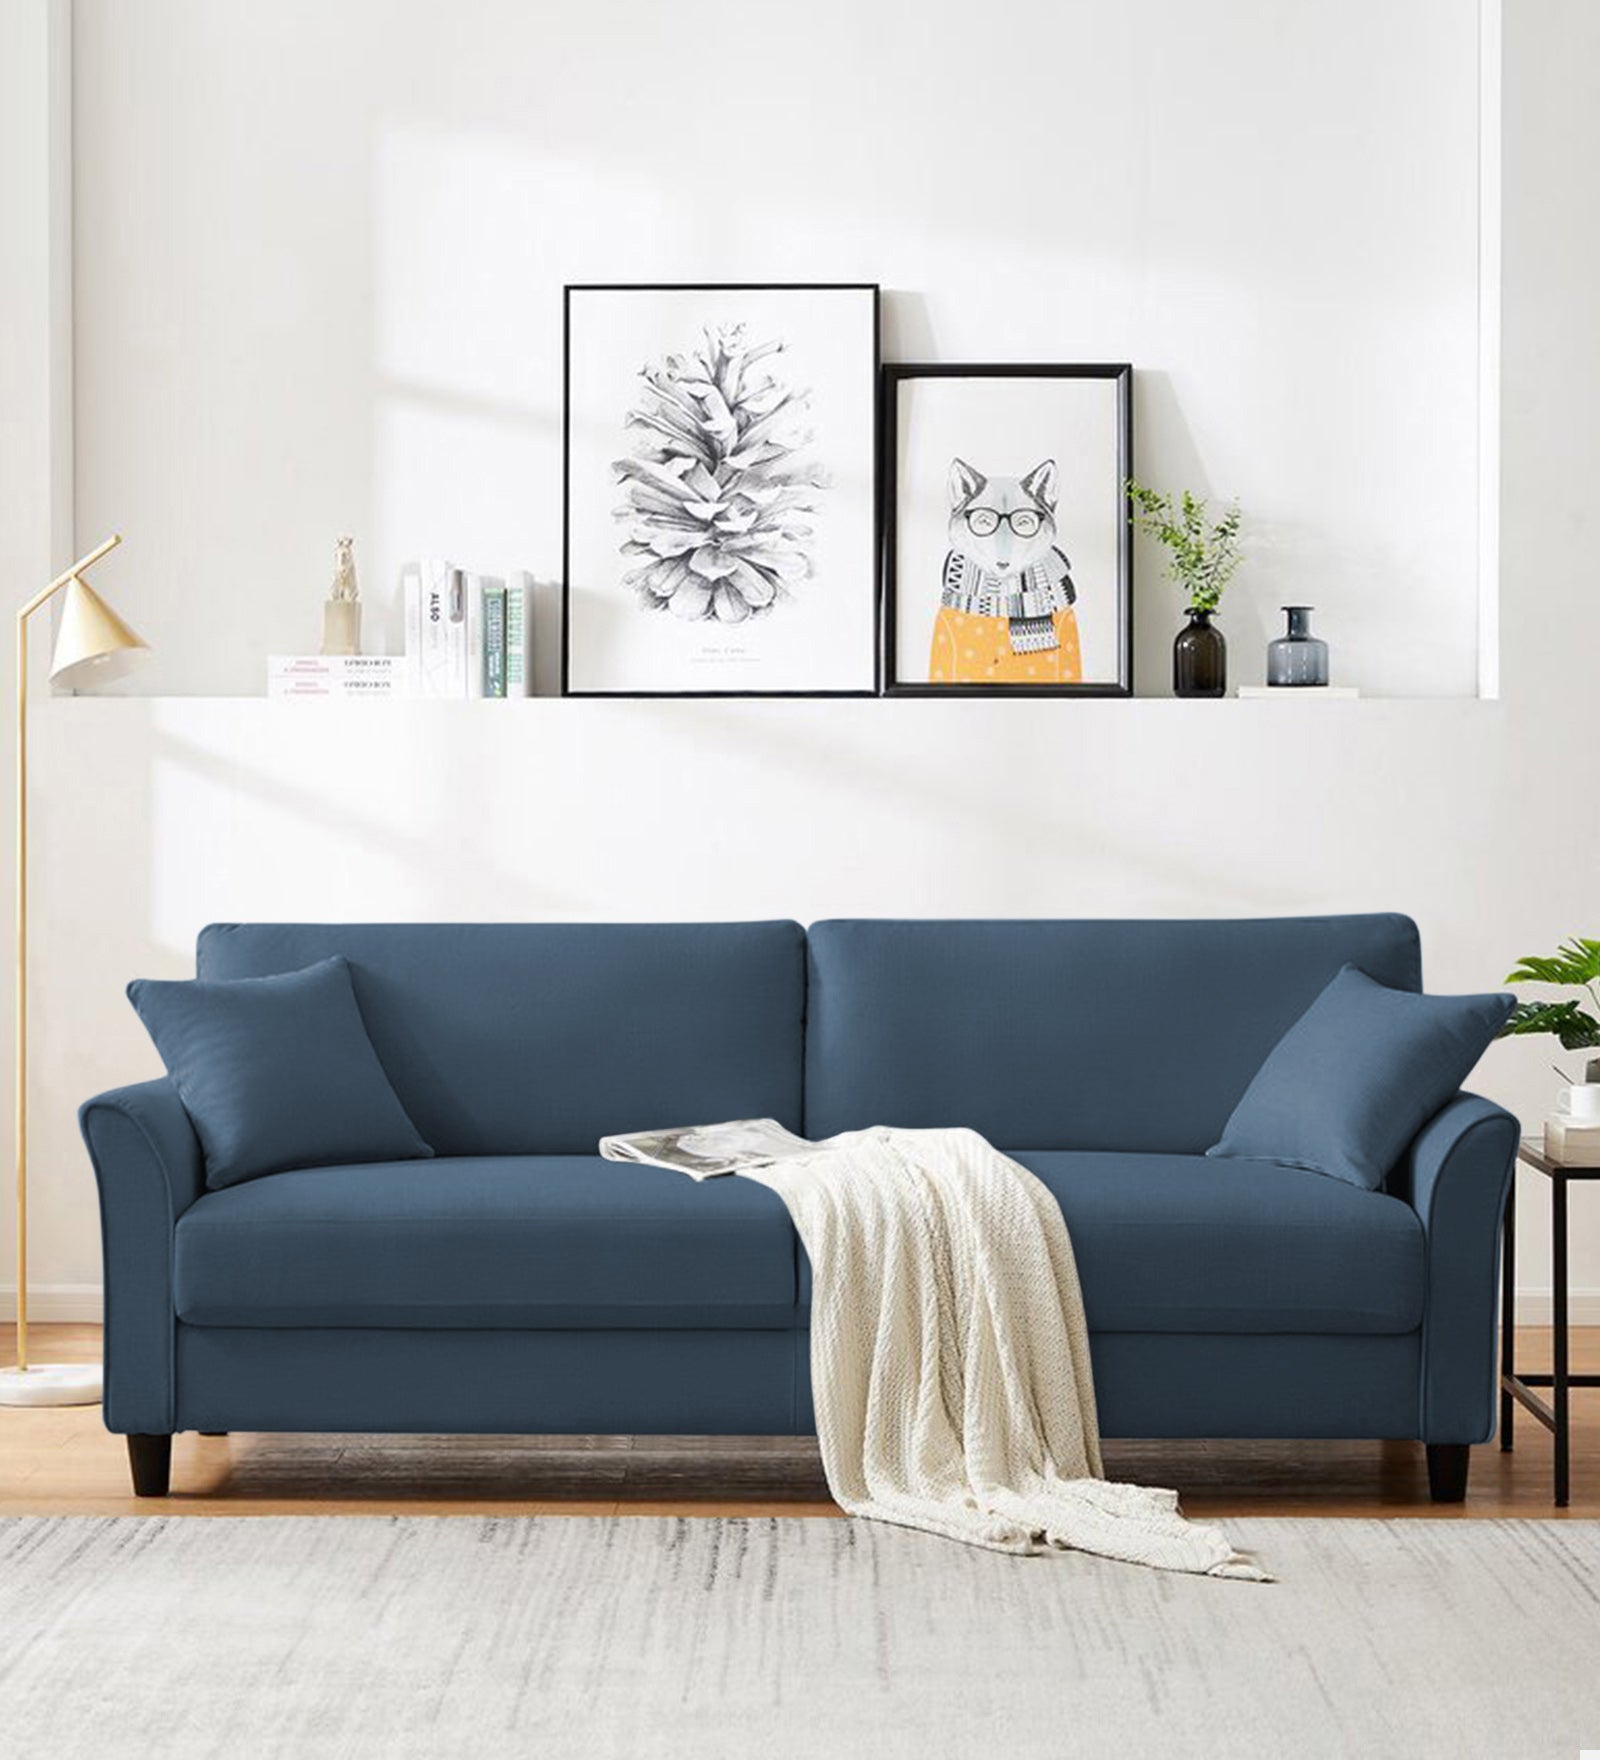 Daroo Velvet 3 Seater Sofa in Oxford Blue Colour